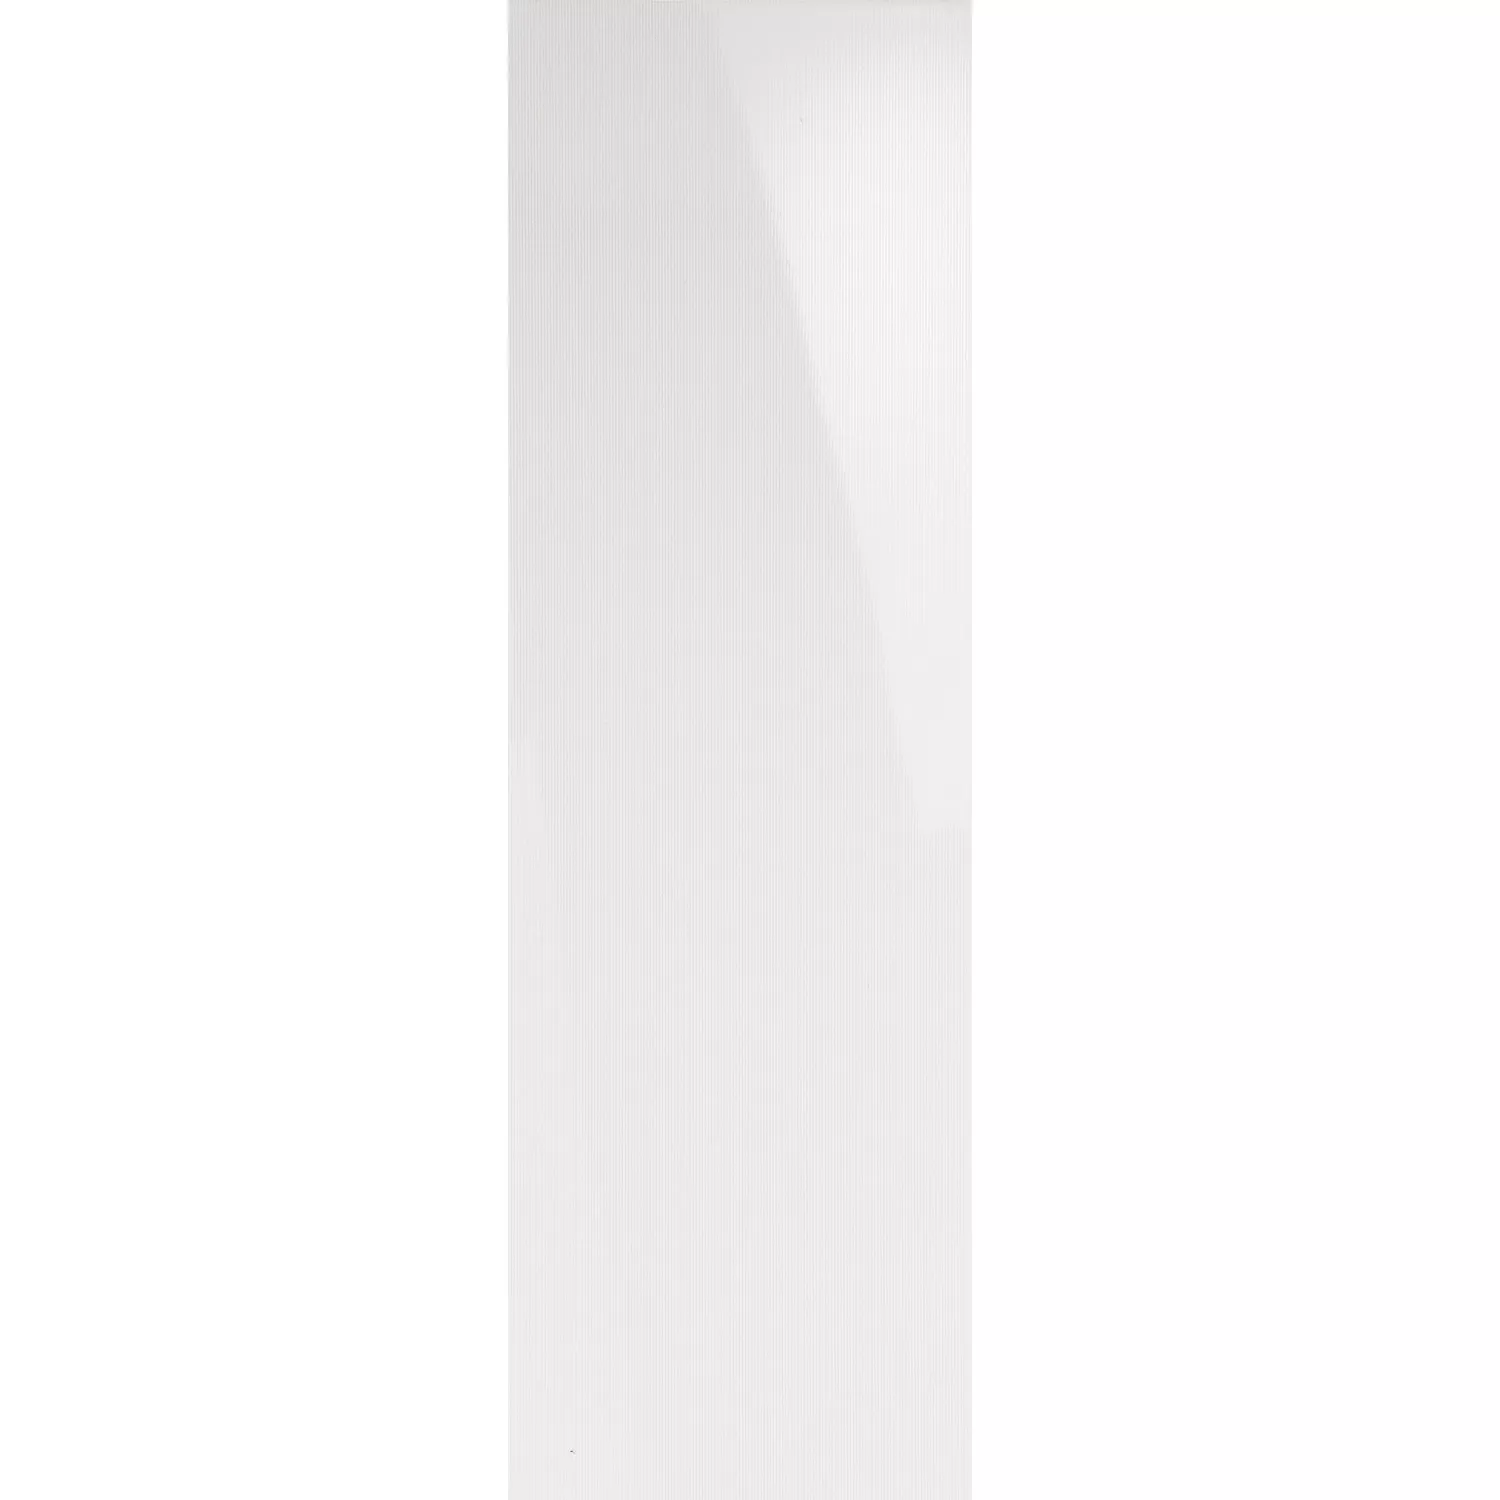 Próbka Płytki Ścienne Pelin Biały Paski Błyszczący 30x90cm